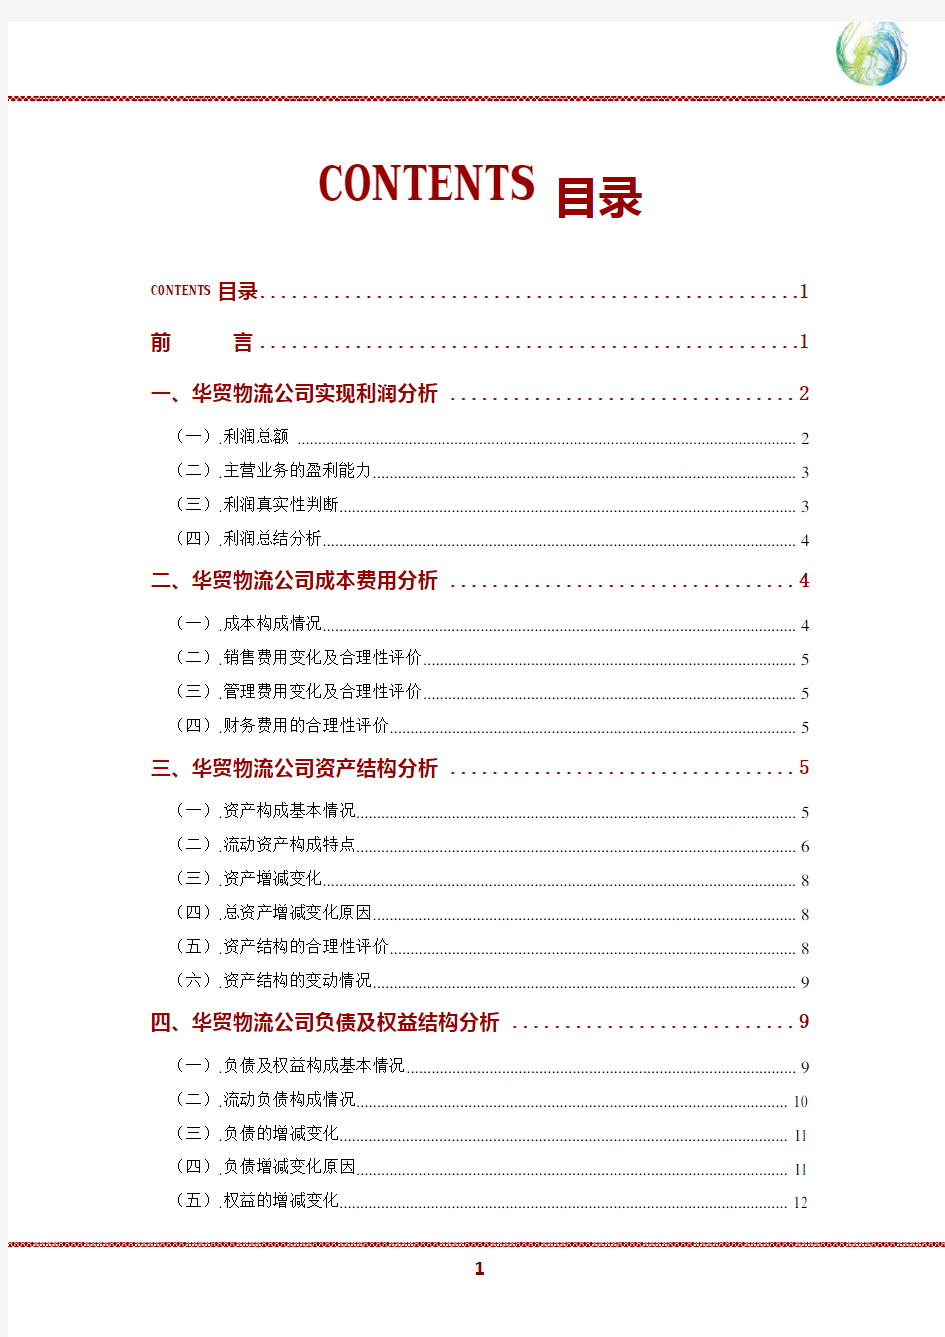 华贸物流公司2019年财务分析研究报告